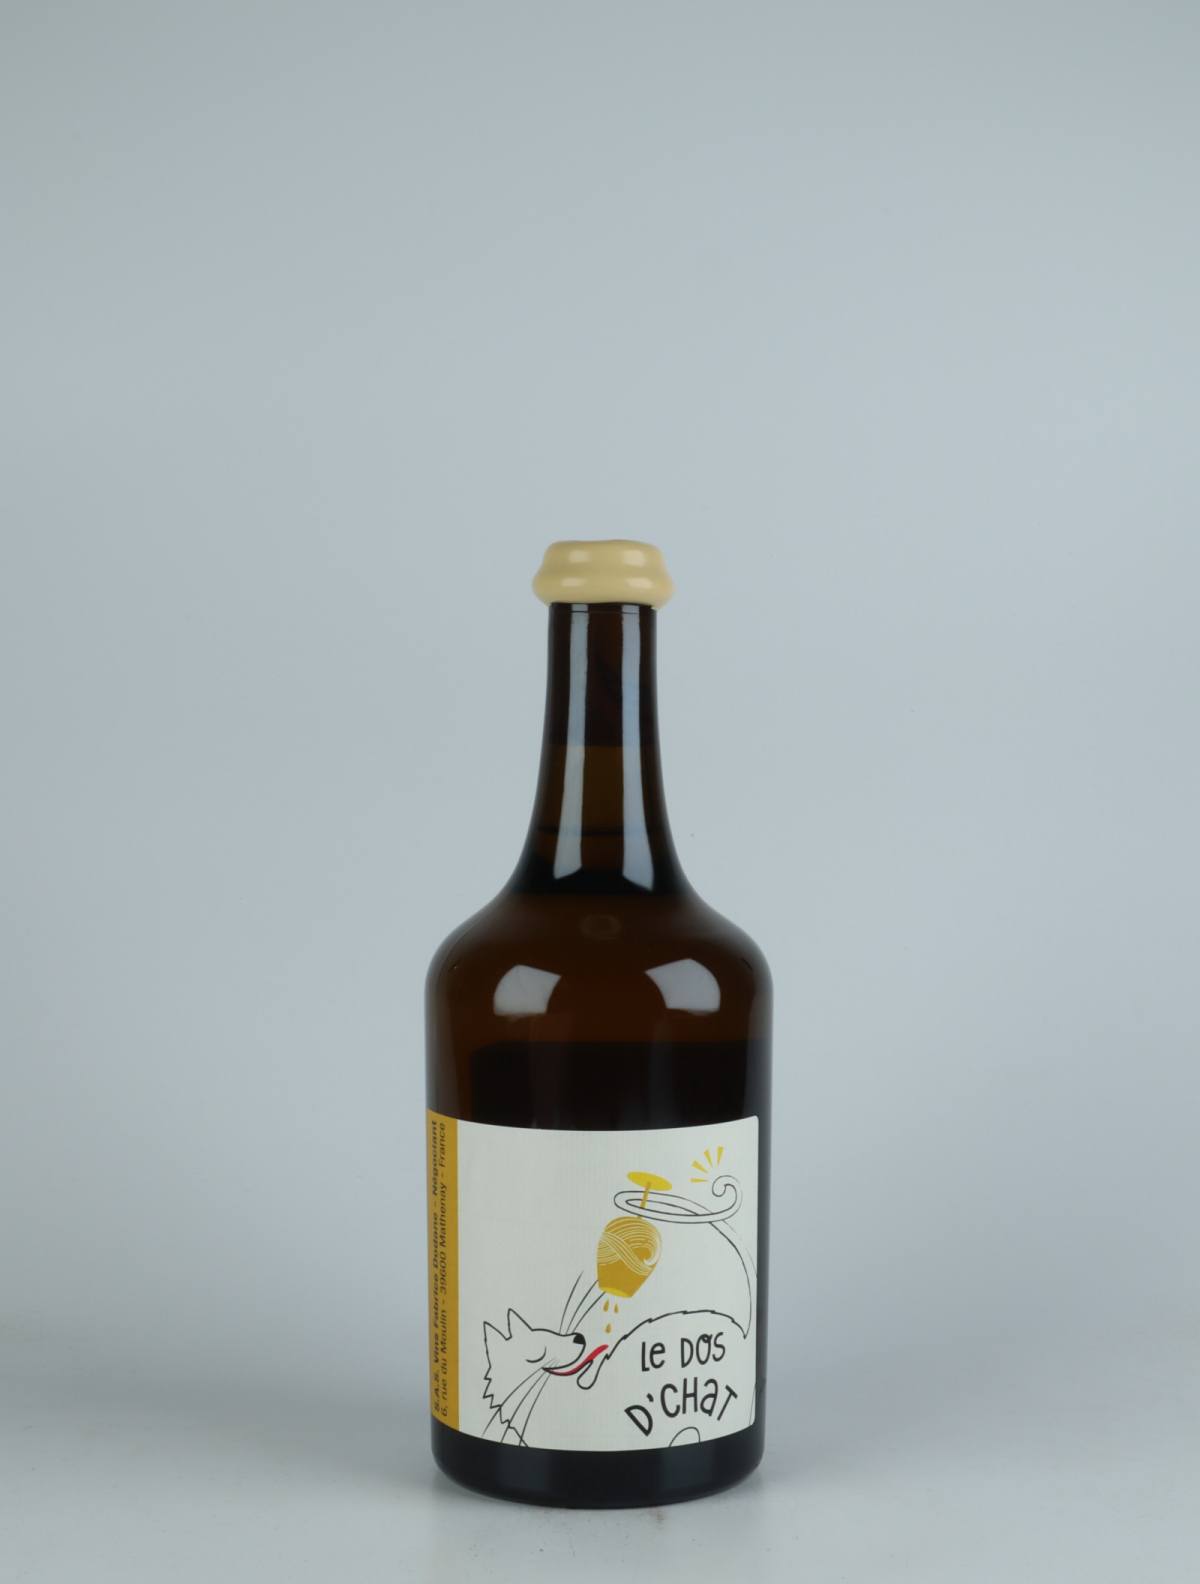 A bottle 2015 Vin Jaune - L'Etoile White wine from Fabrice Dodane, Jura in France